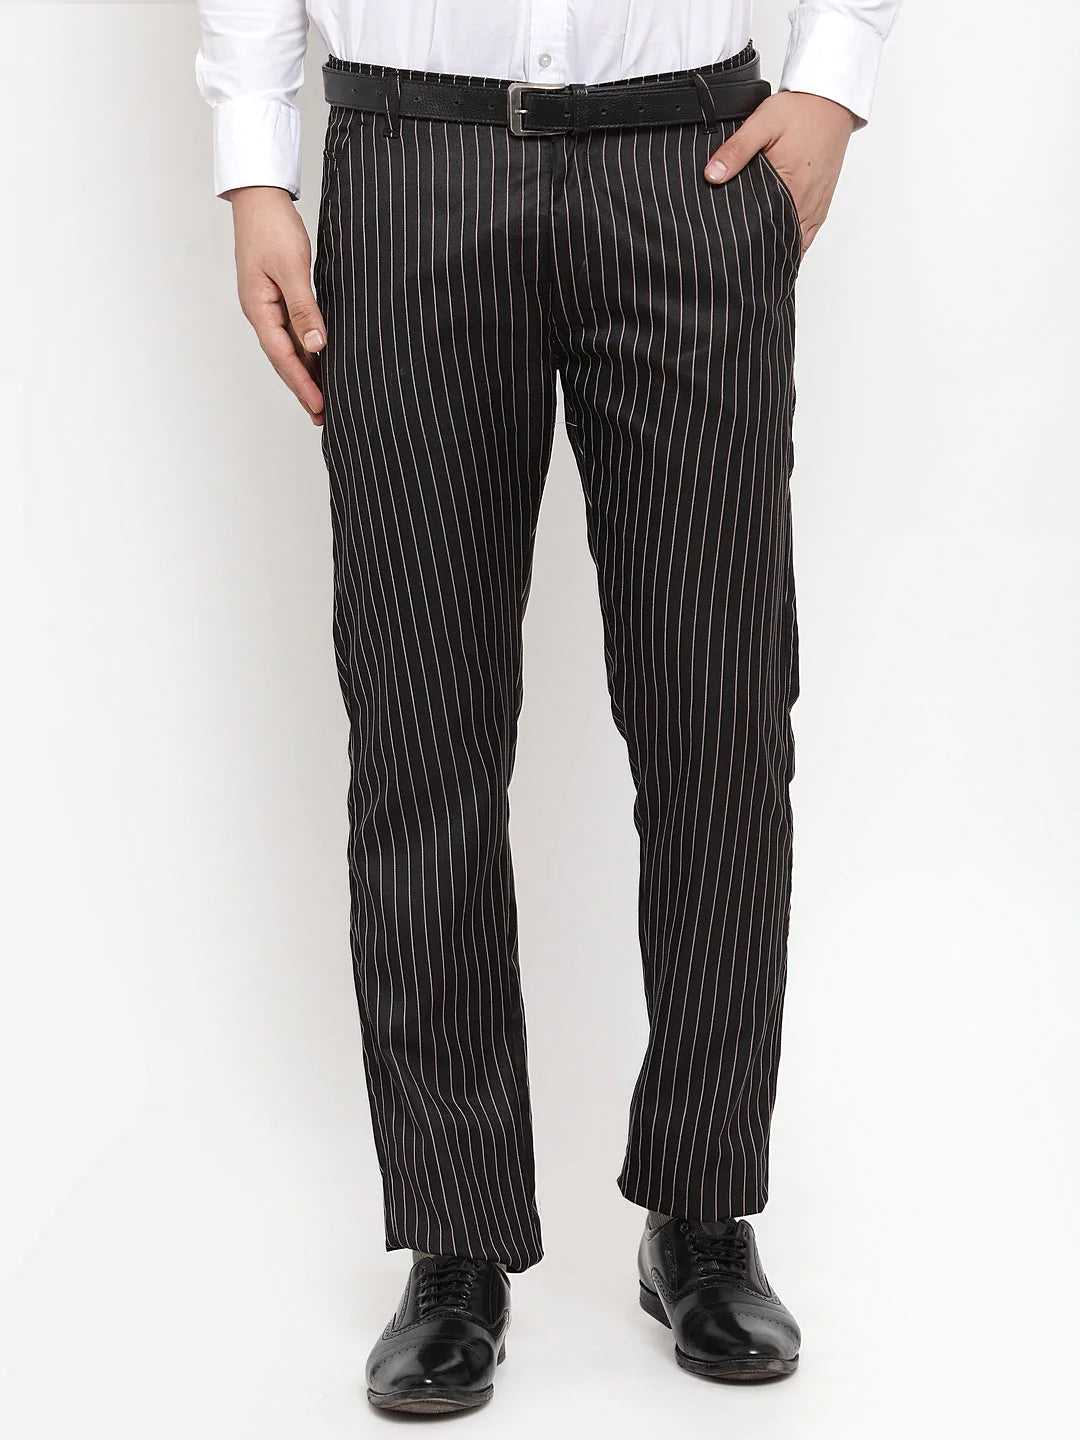 Jainish Men's Black Cotton Striped Formal Trousers ( FGP 255Black )